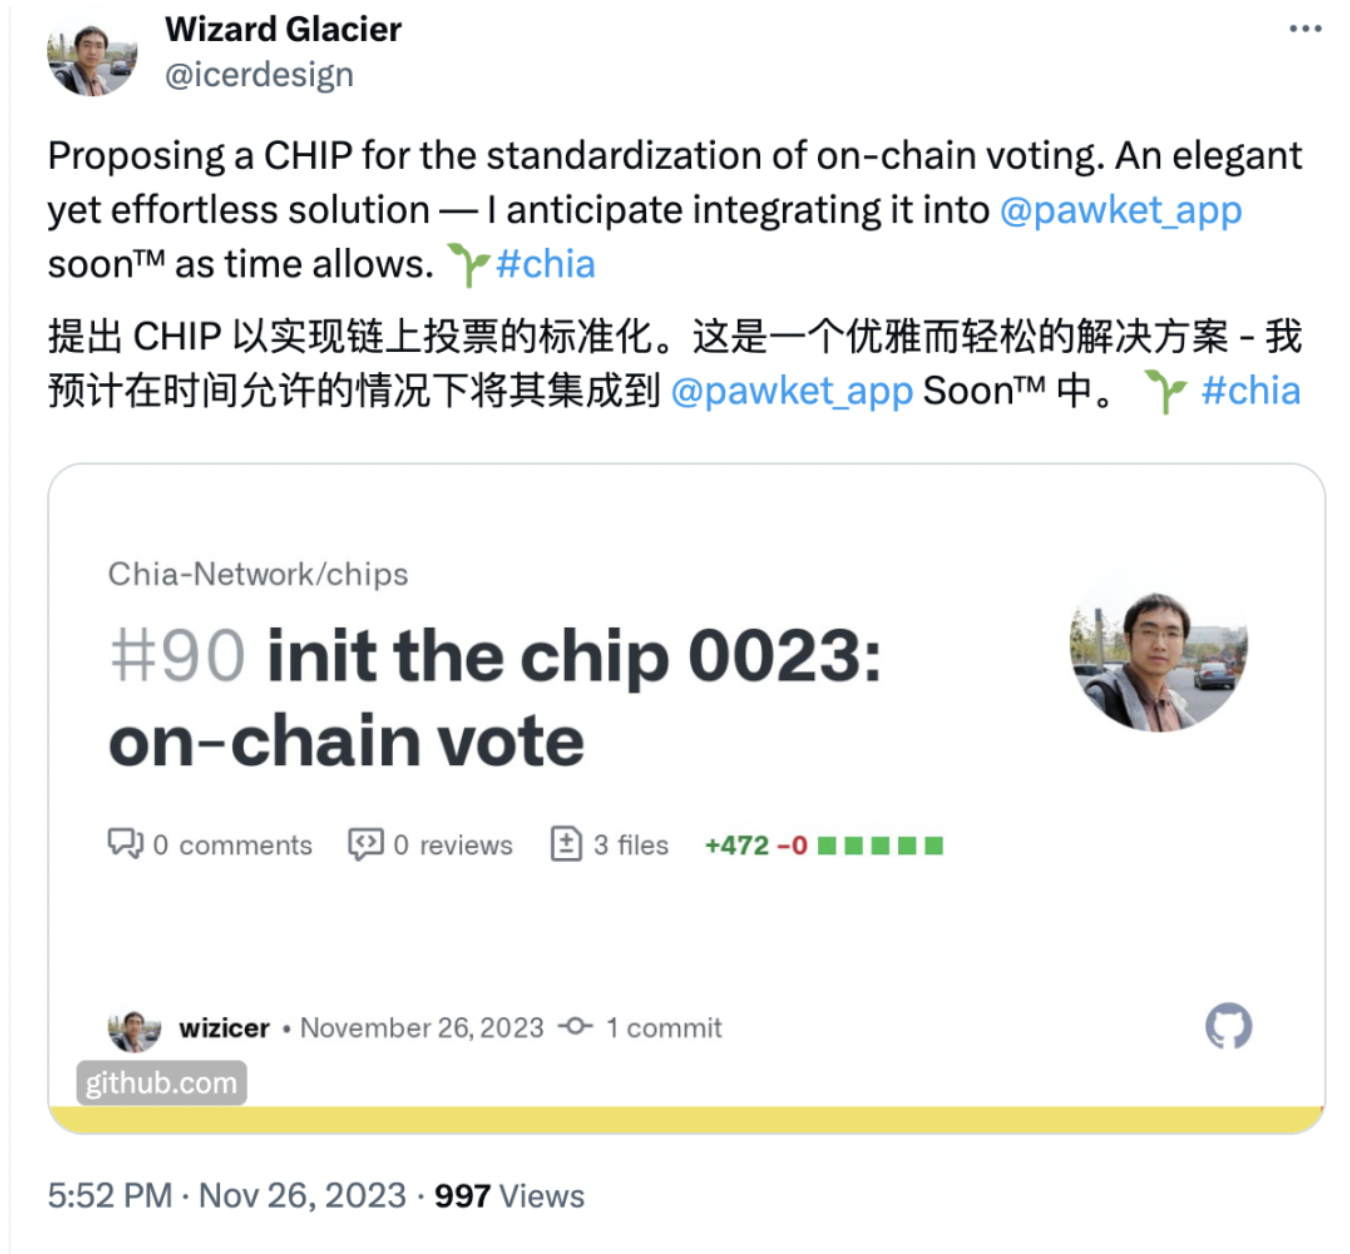 【Chia生态】冰博士提出Chia链上投票标准提案